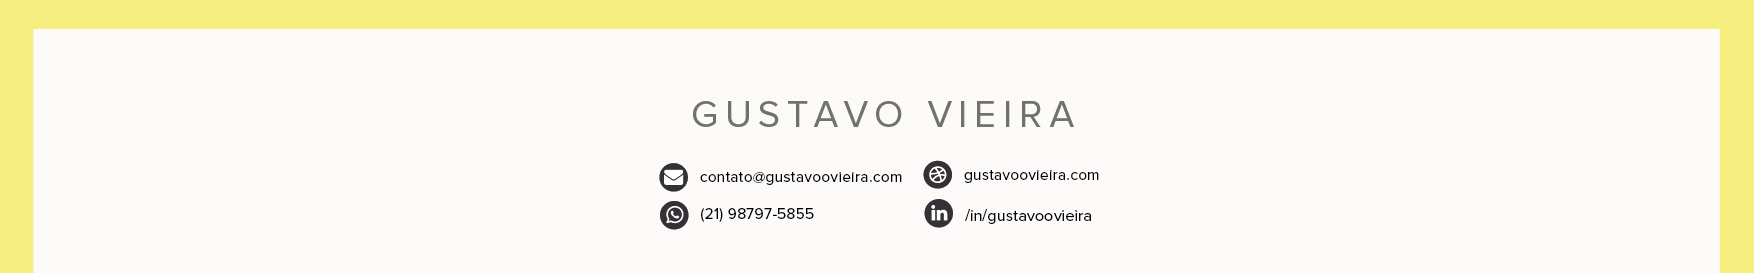 Gustavo Vieira profil başlığı